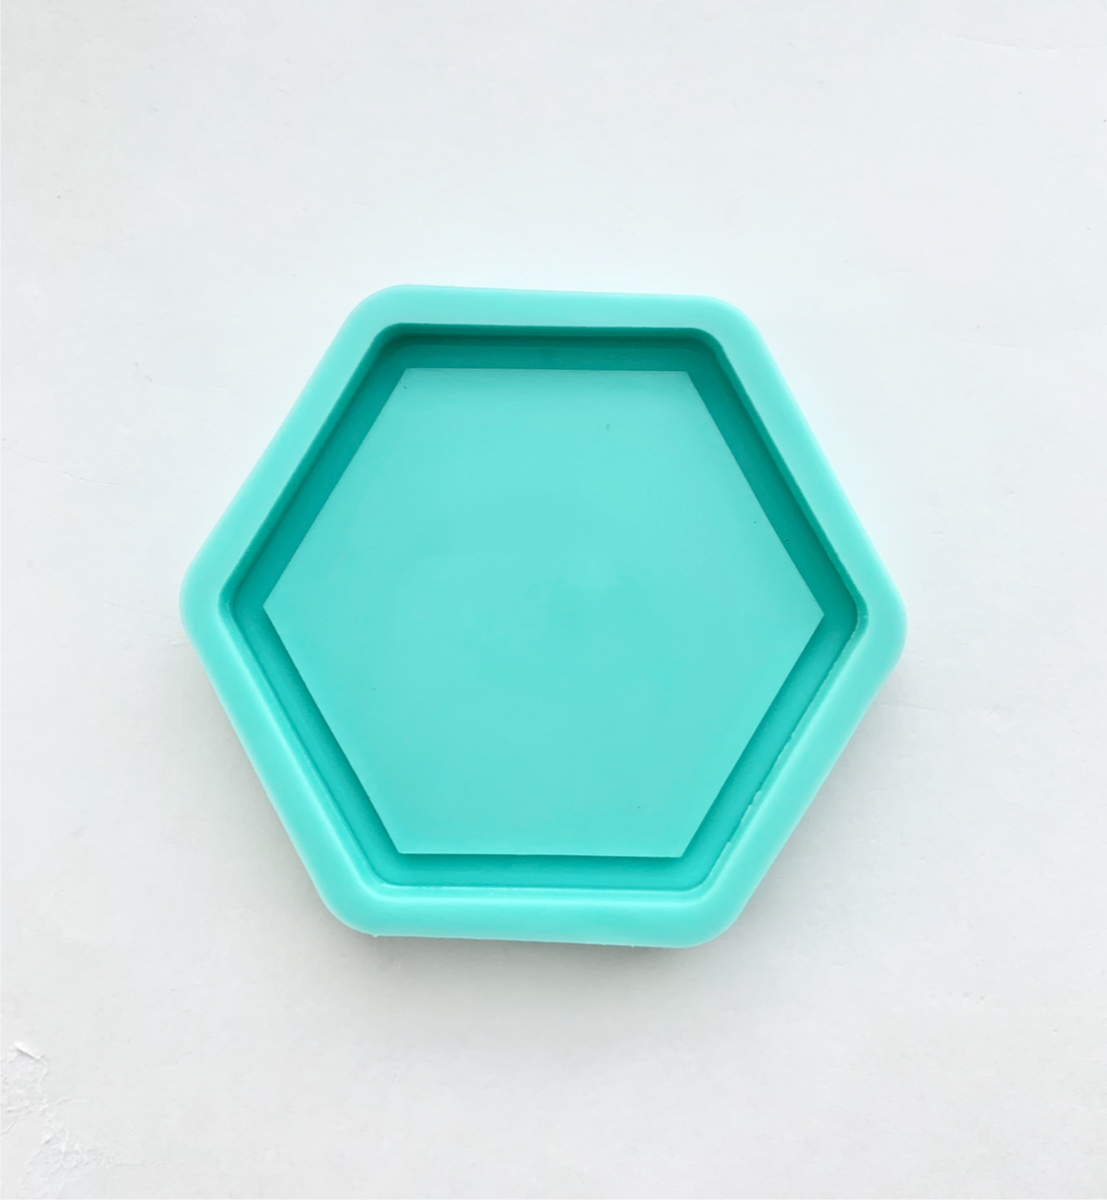 Hexagon Silicone Mold, Small Coaster Flexible Mold